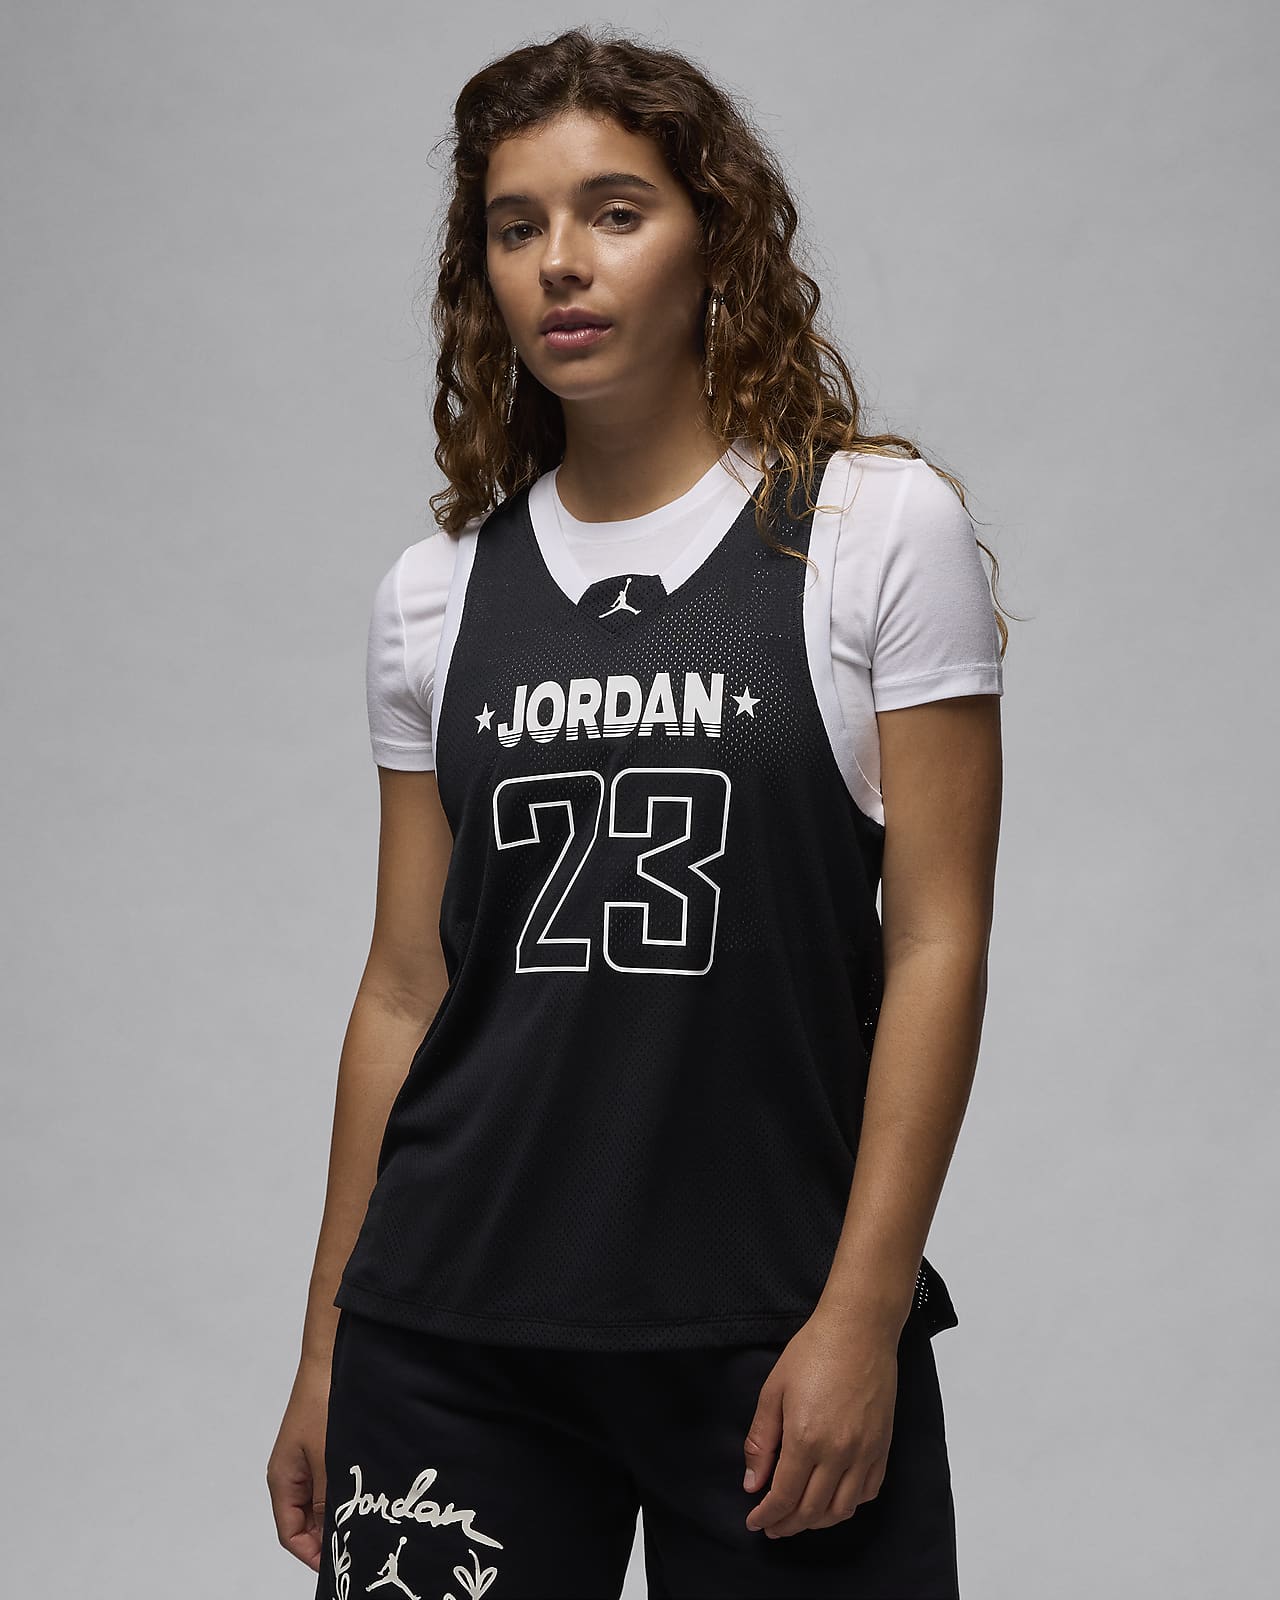 Jordan 23 Forma Kadın Atleti